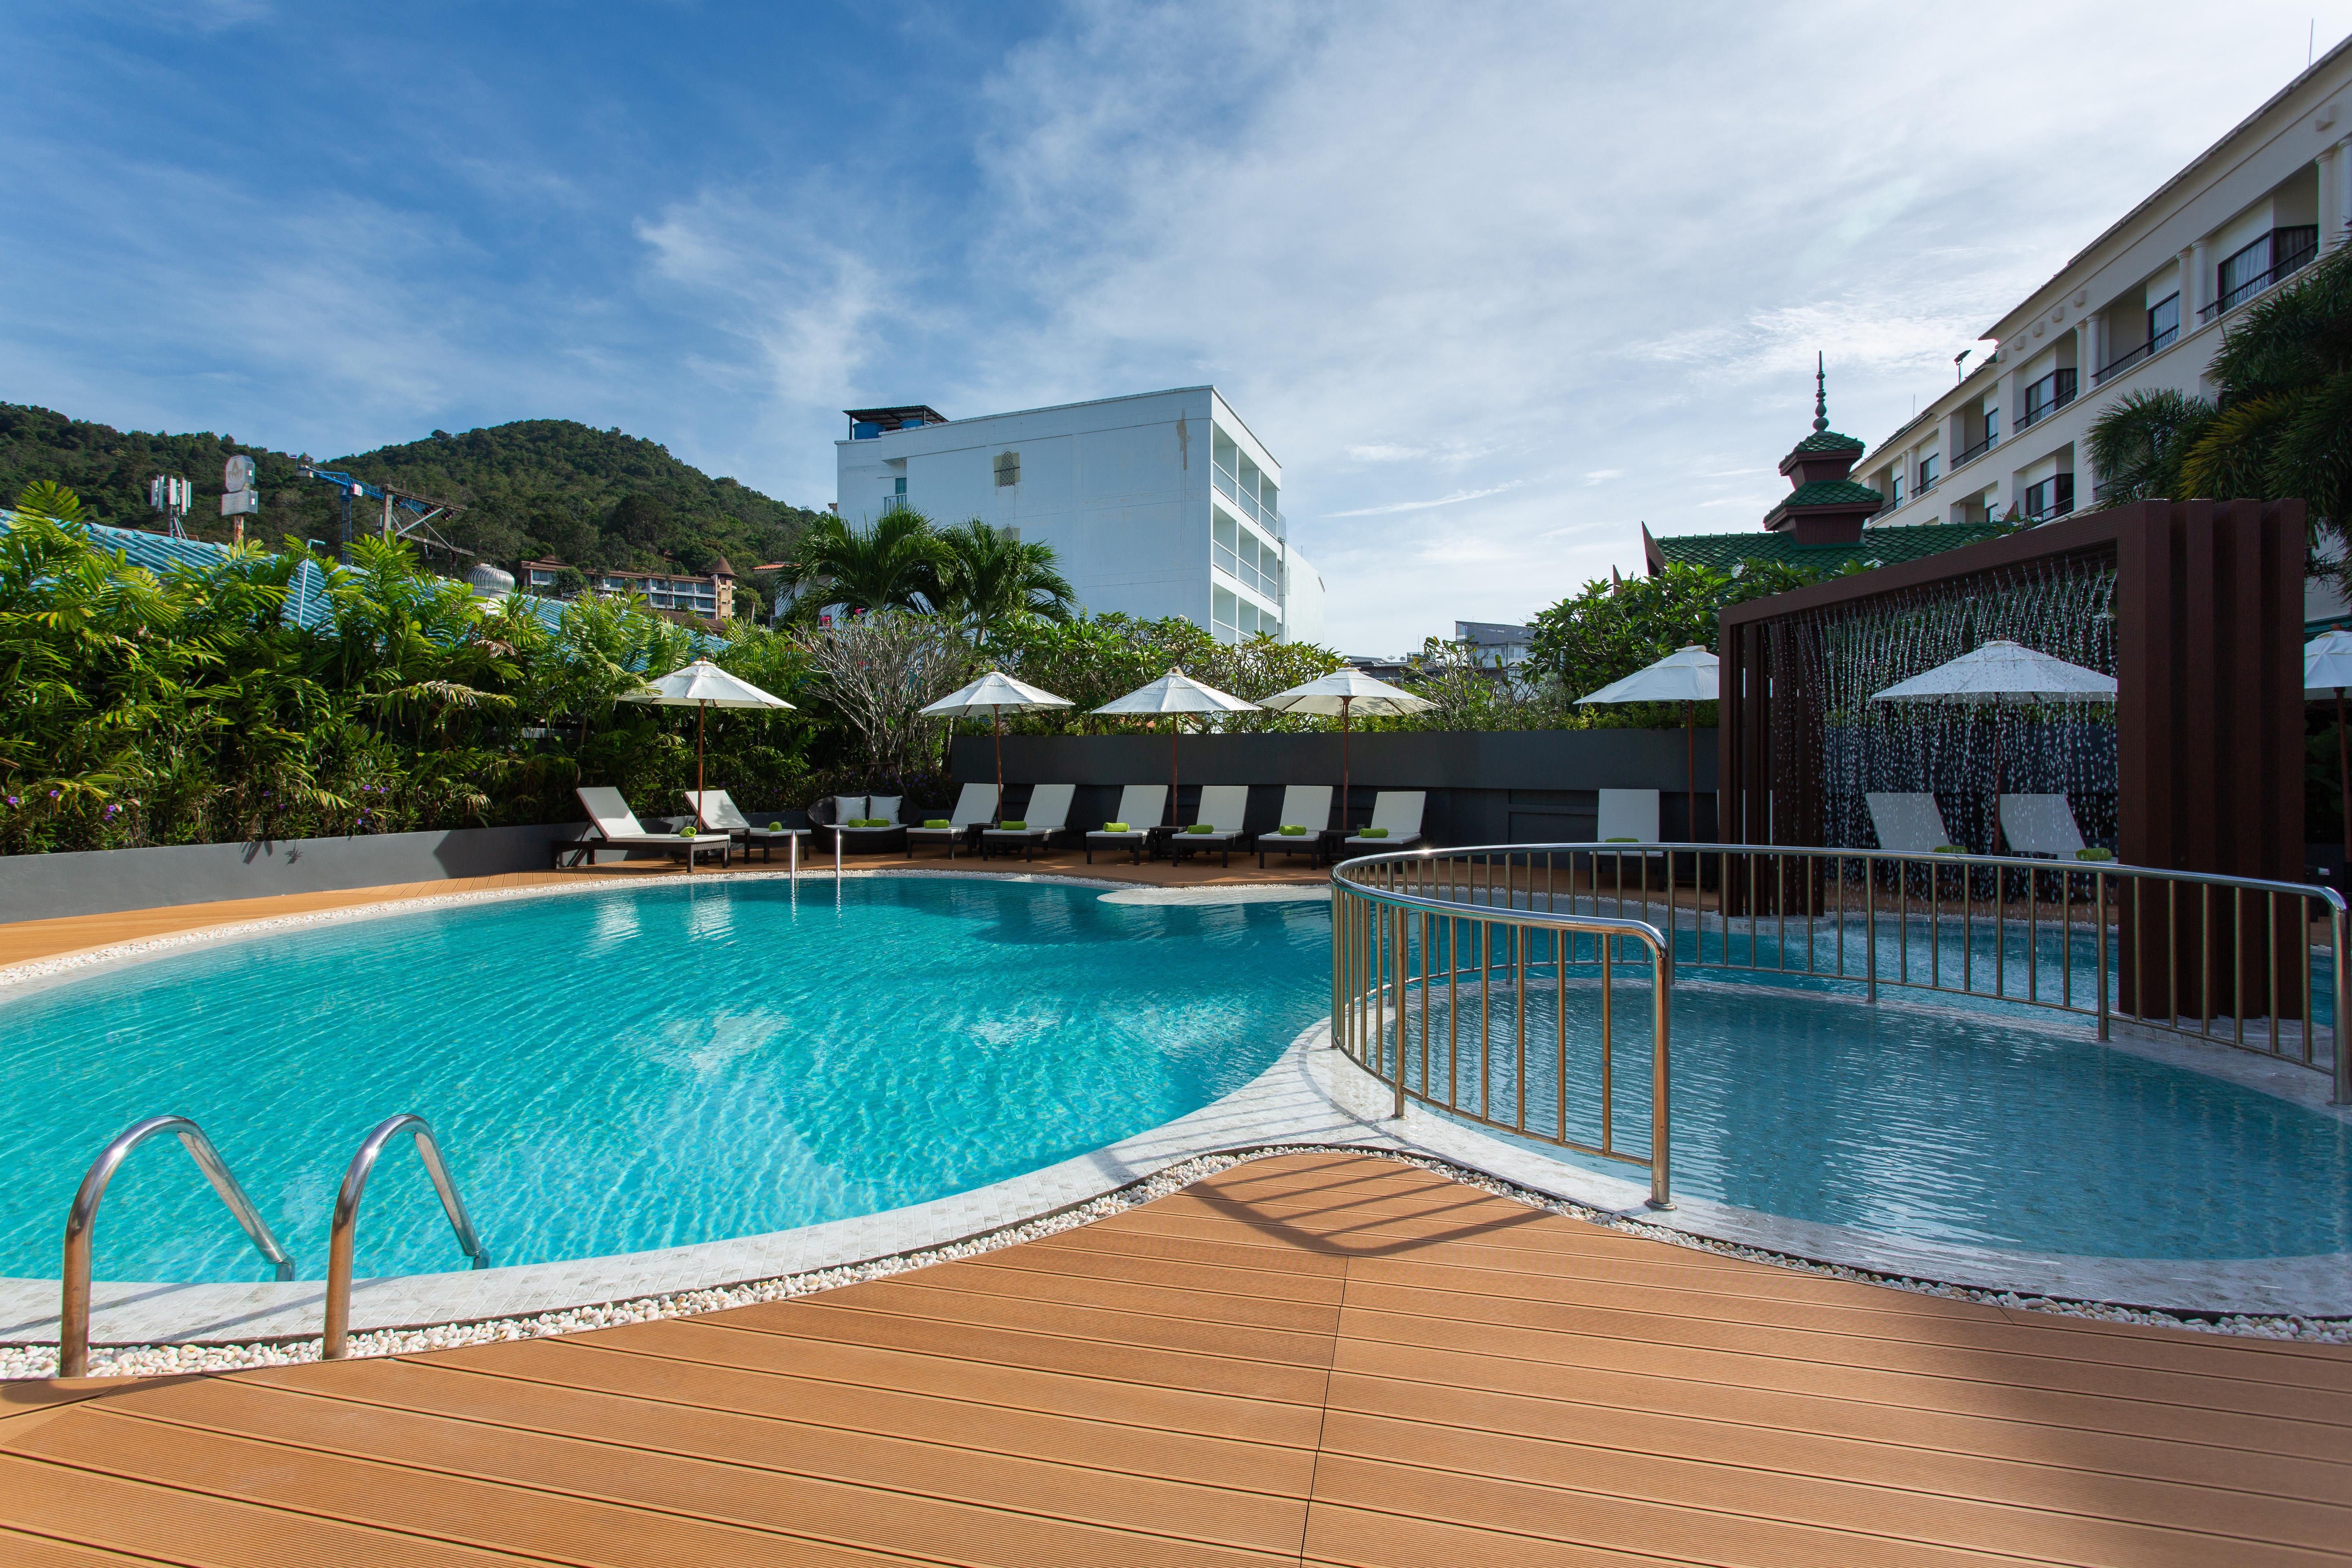 Krabi Heritage Hotel Ao Nang Extérieur photo